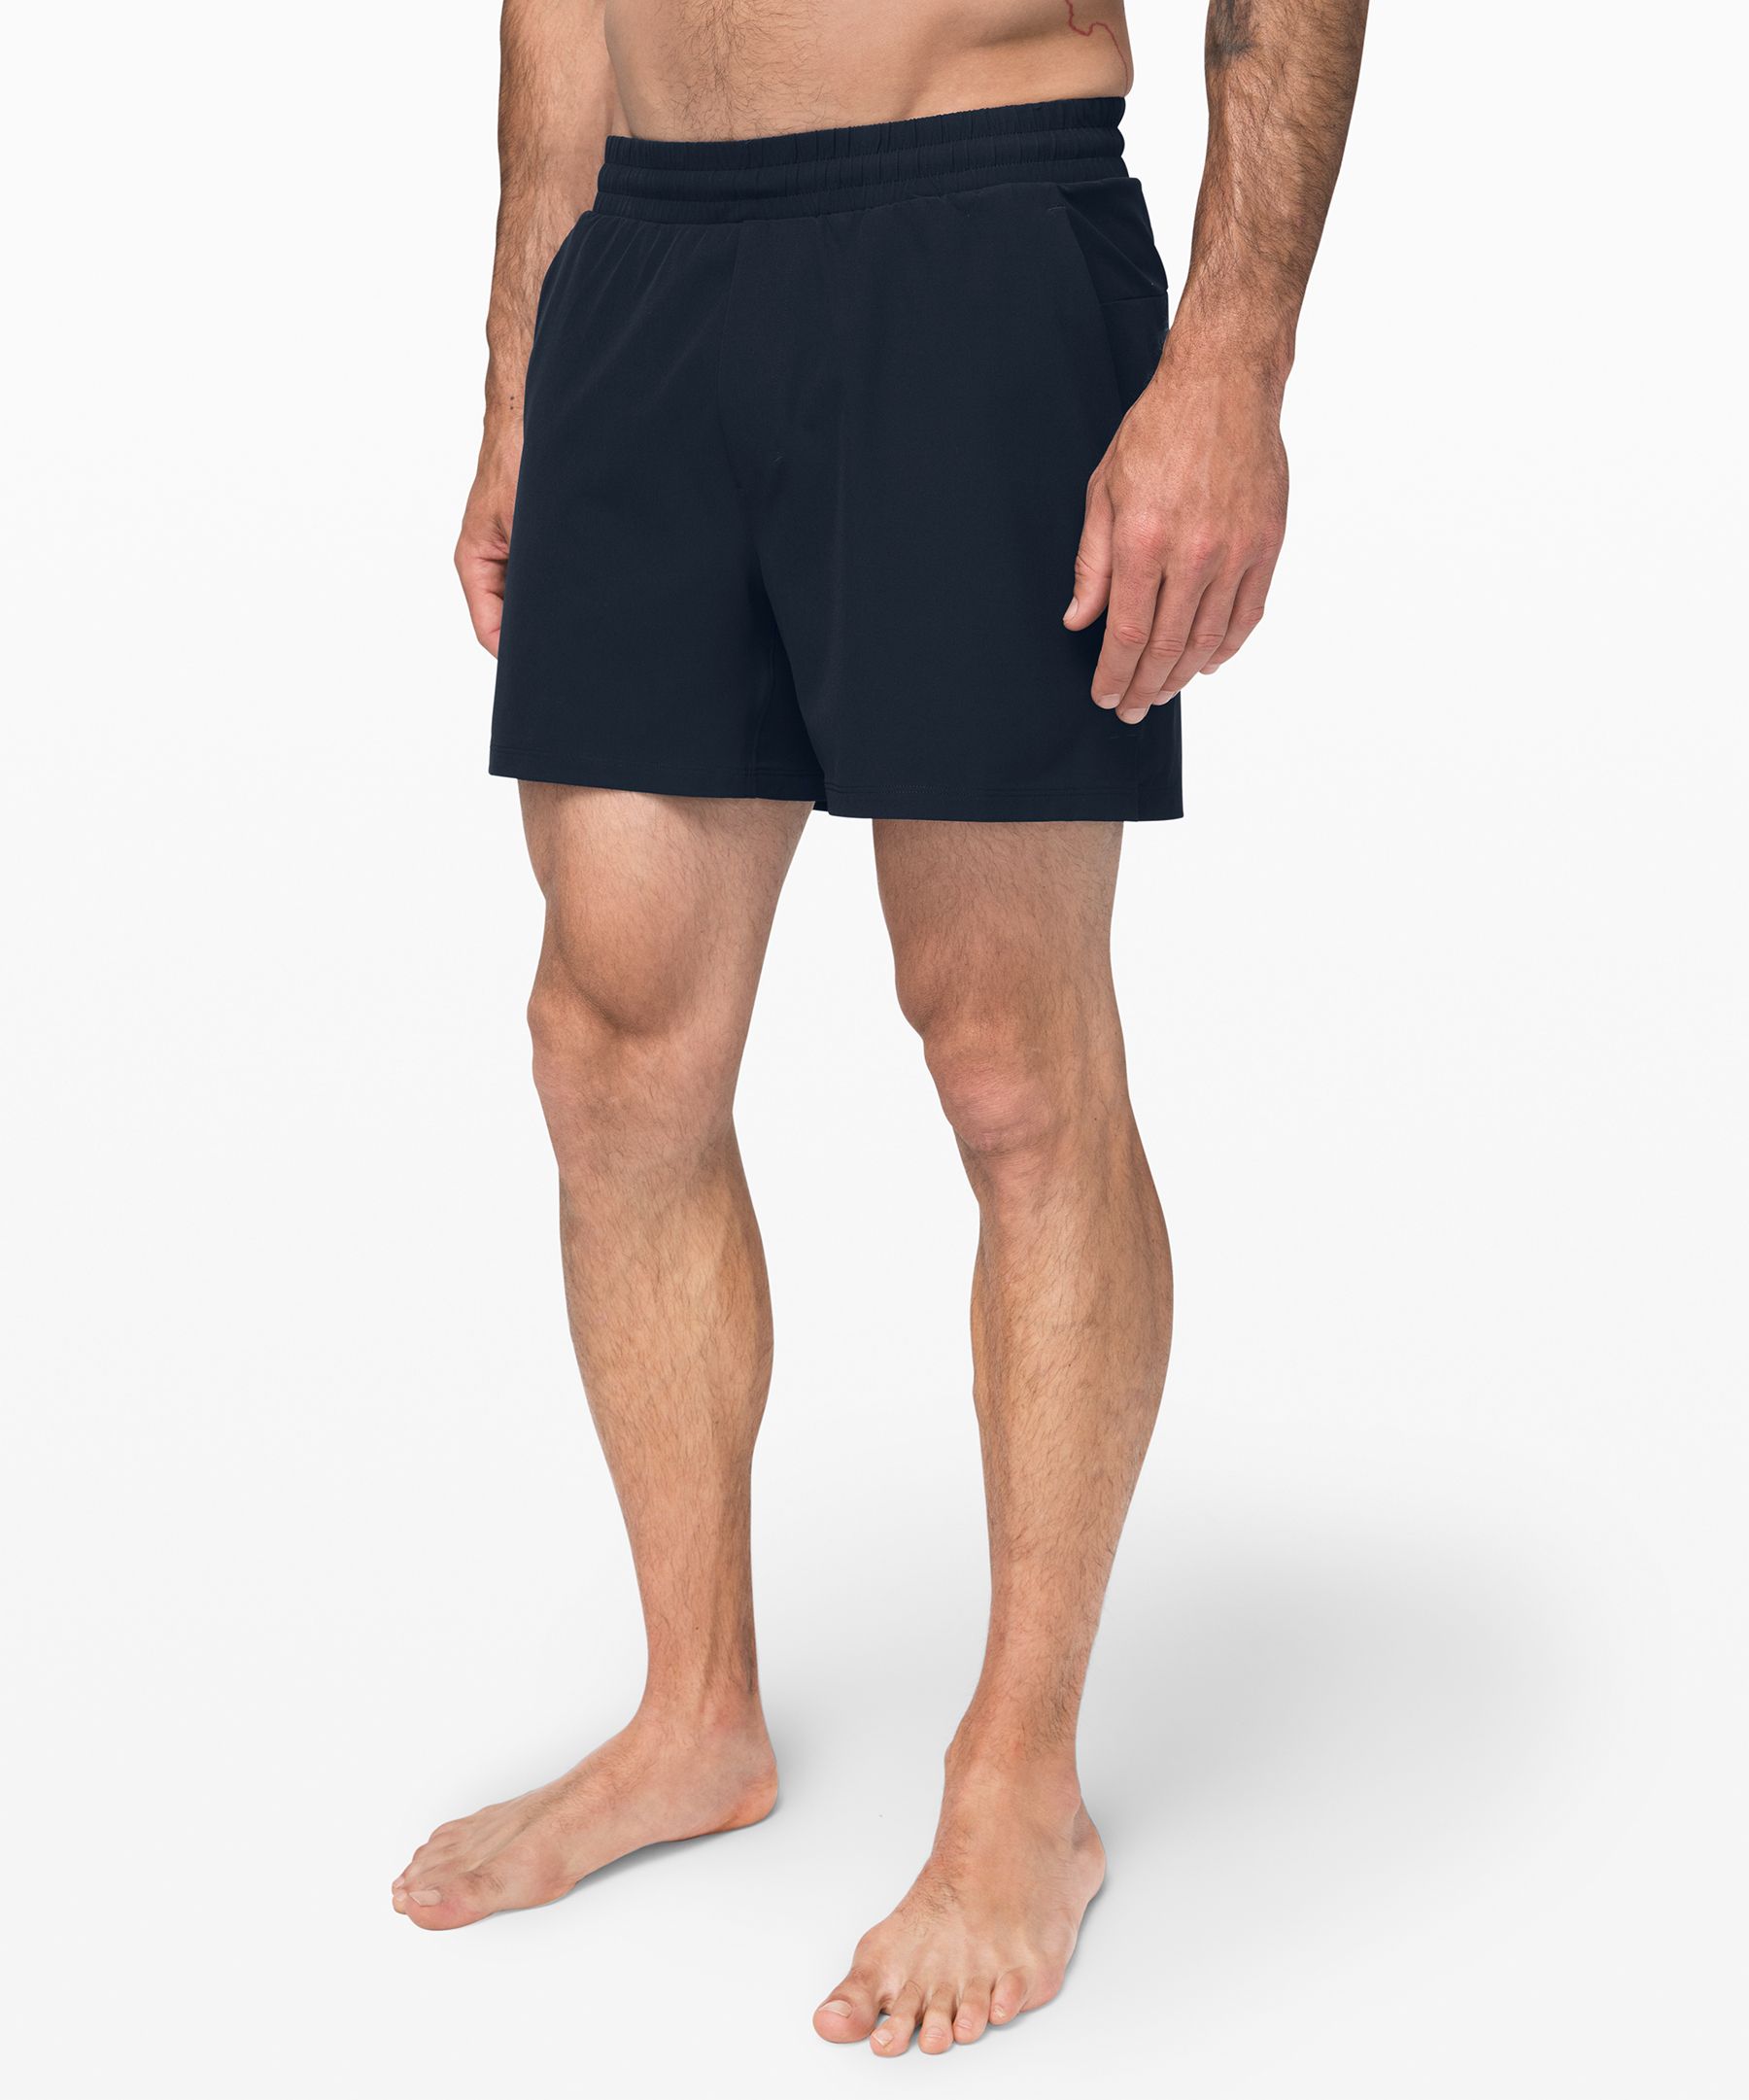 mens shorts lululemon